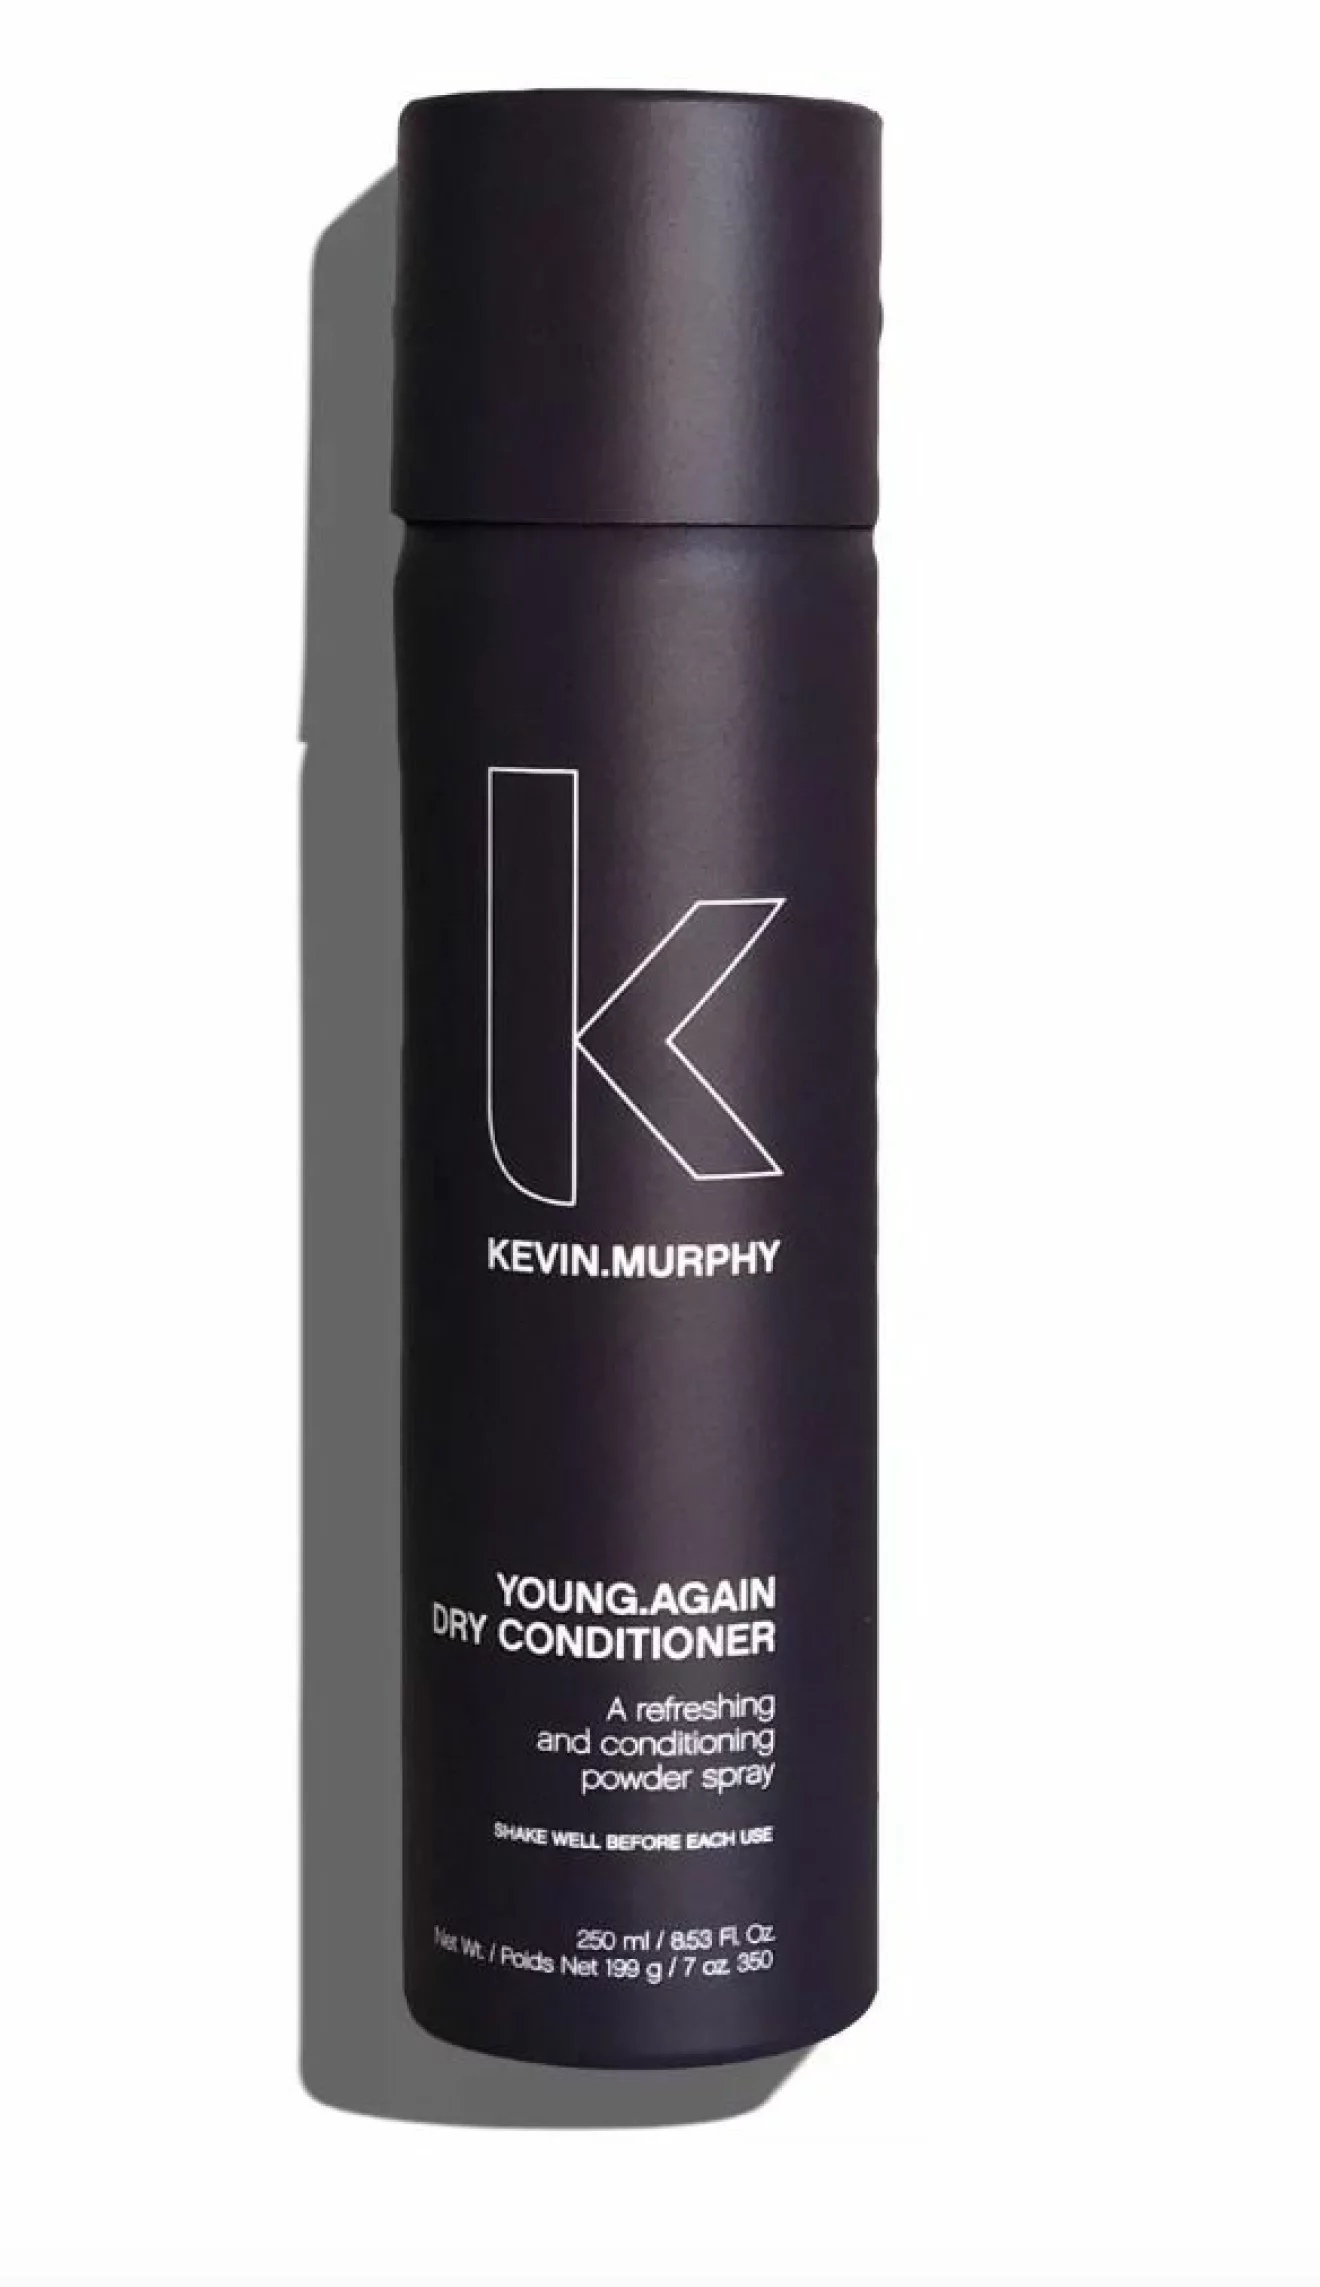 Balsamsprayen Conditioner spray young again från Kevin Murphy.